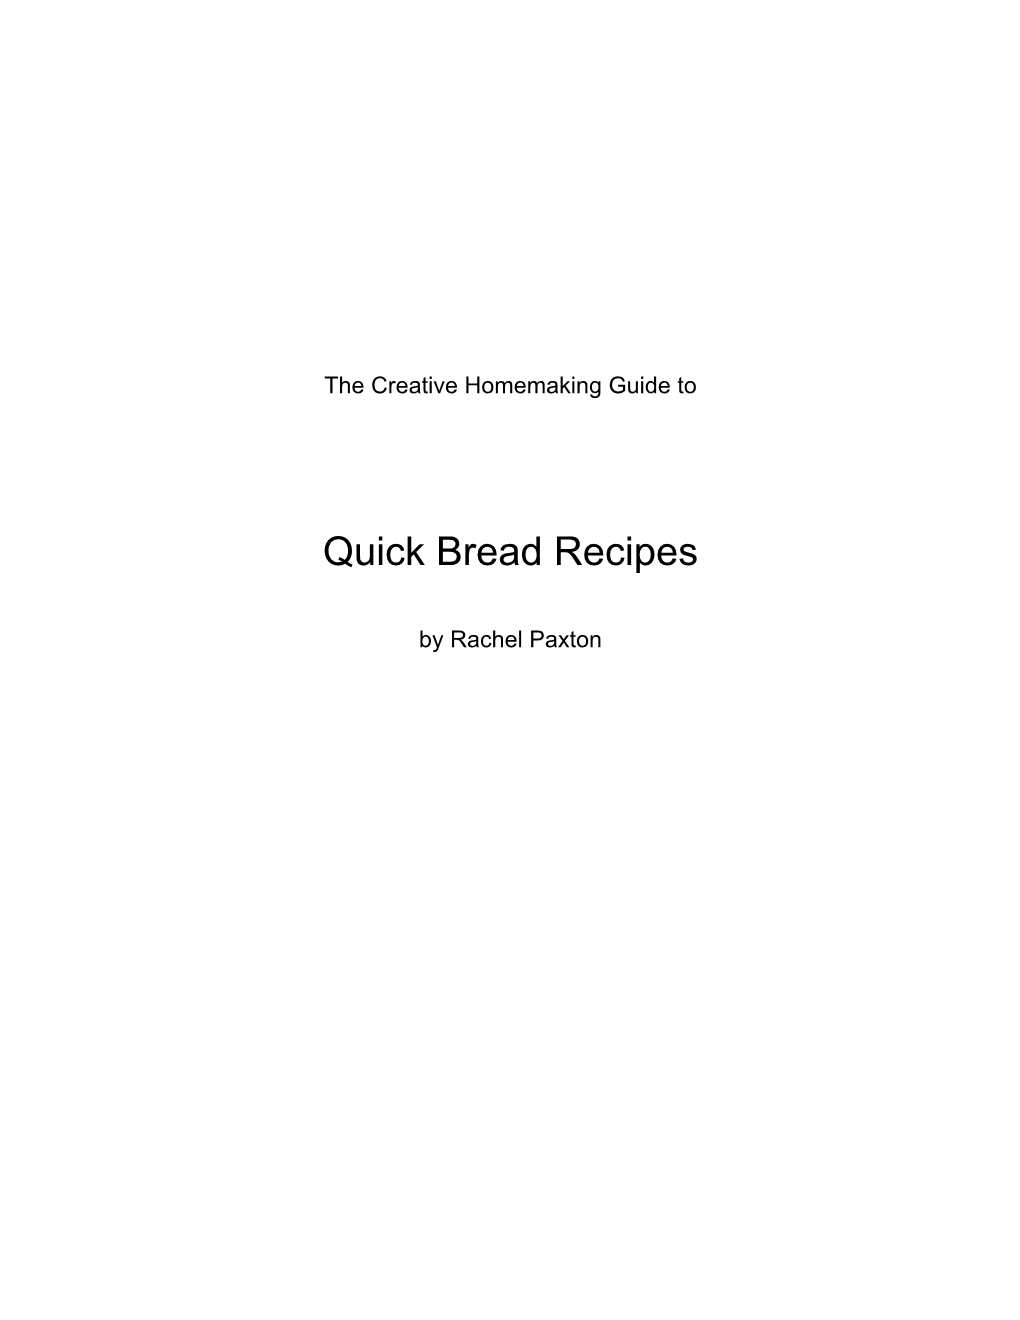 Quick Bread Recipes